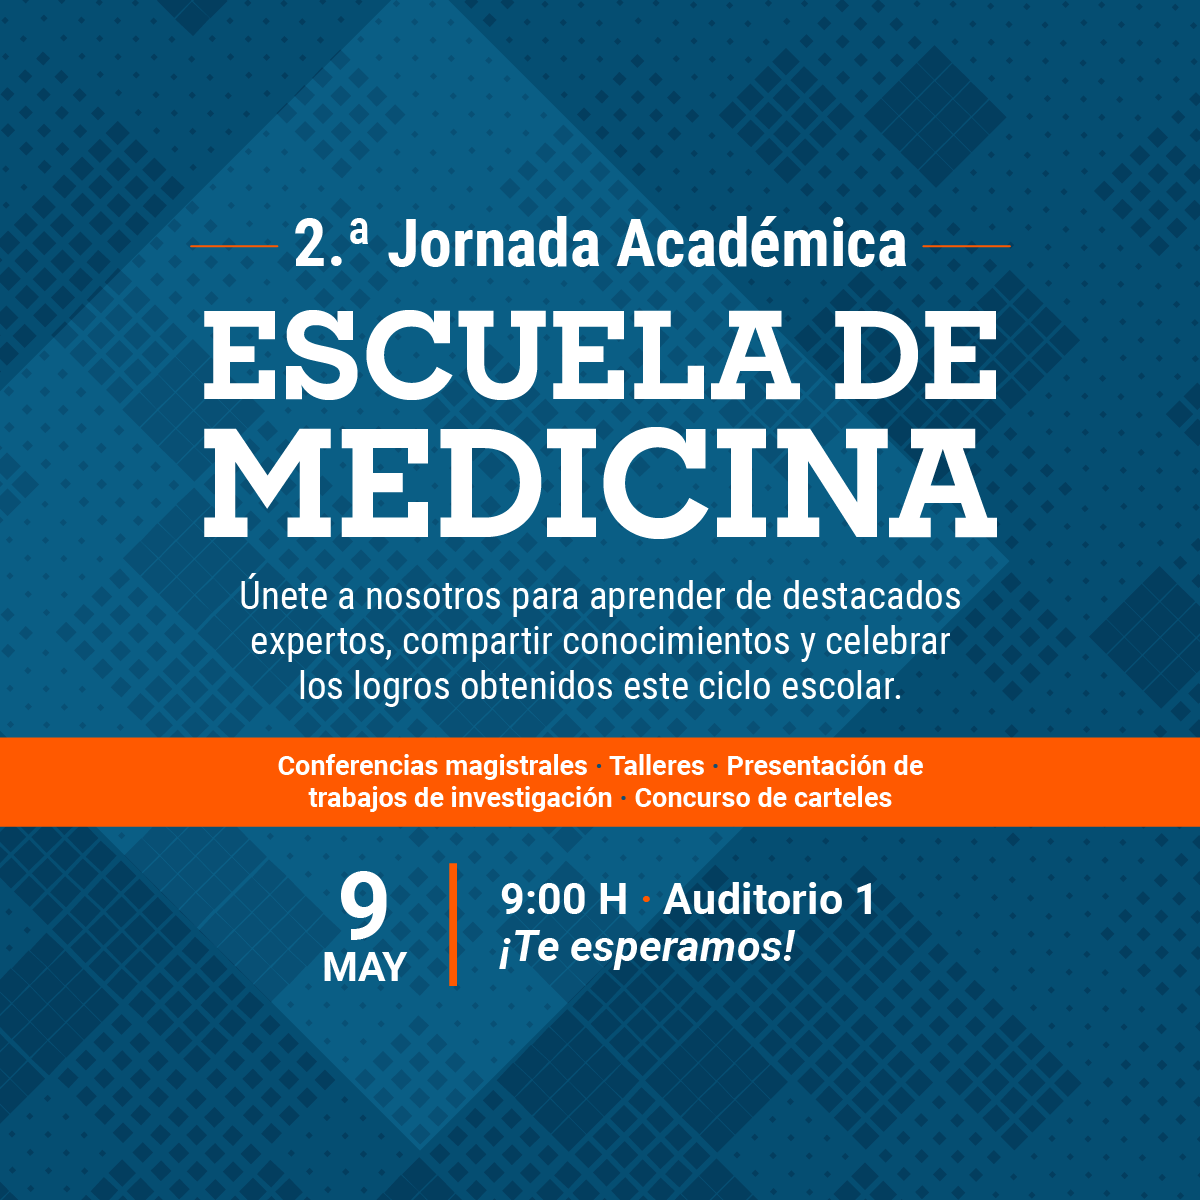 2.a Jornada Académica de la Escuela de Medicina